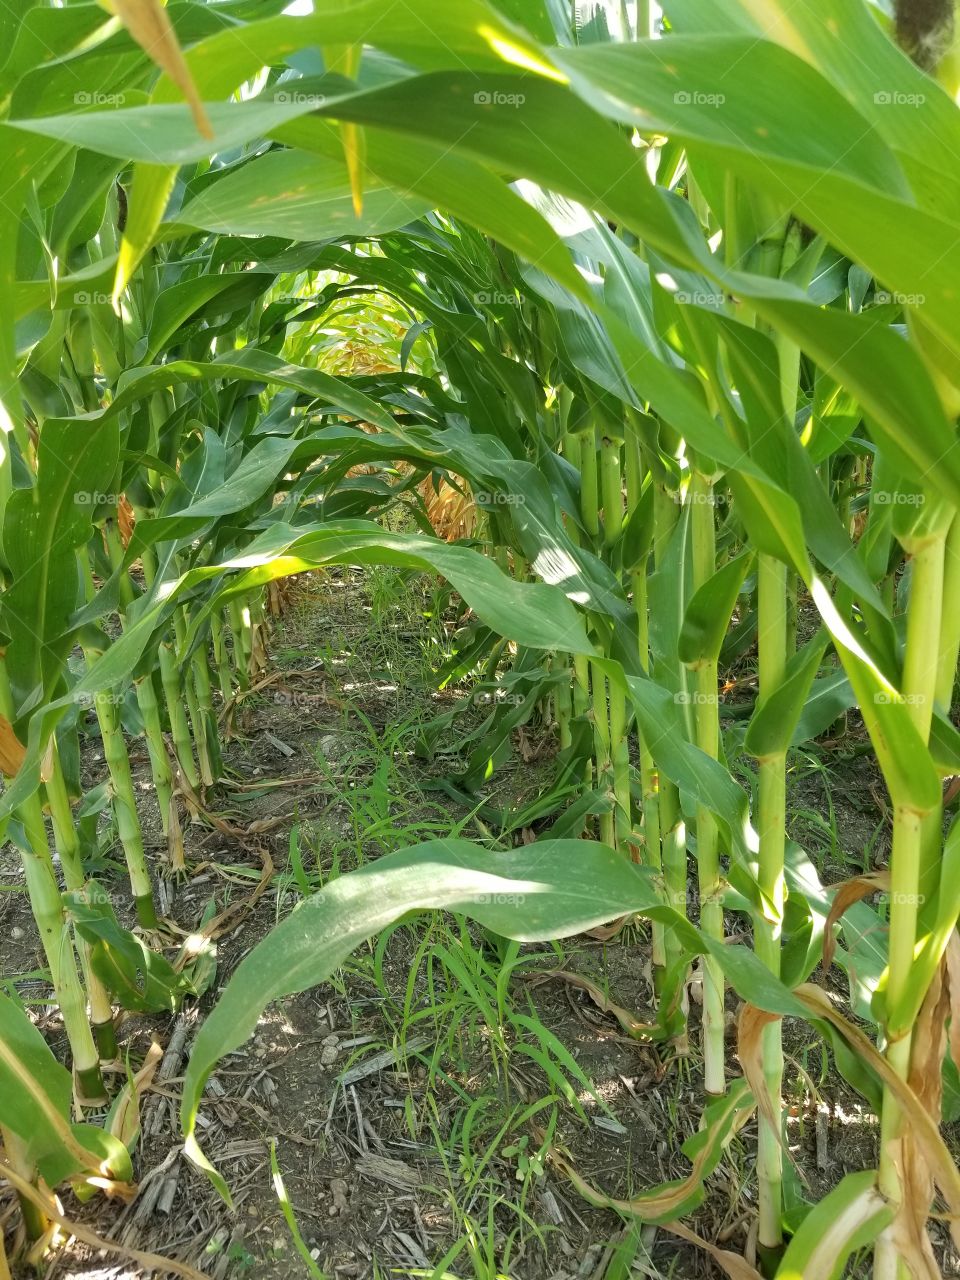 inside the corn field